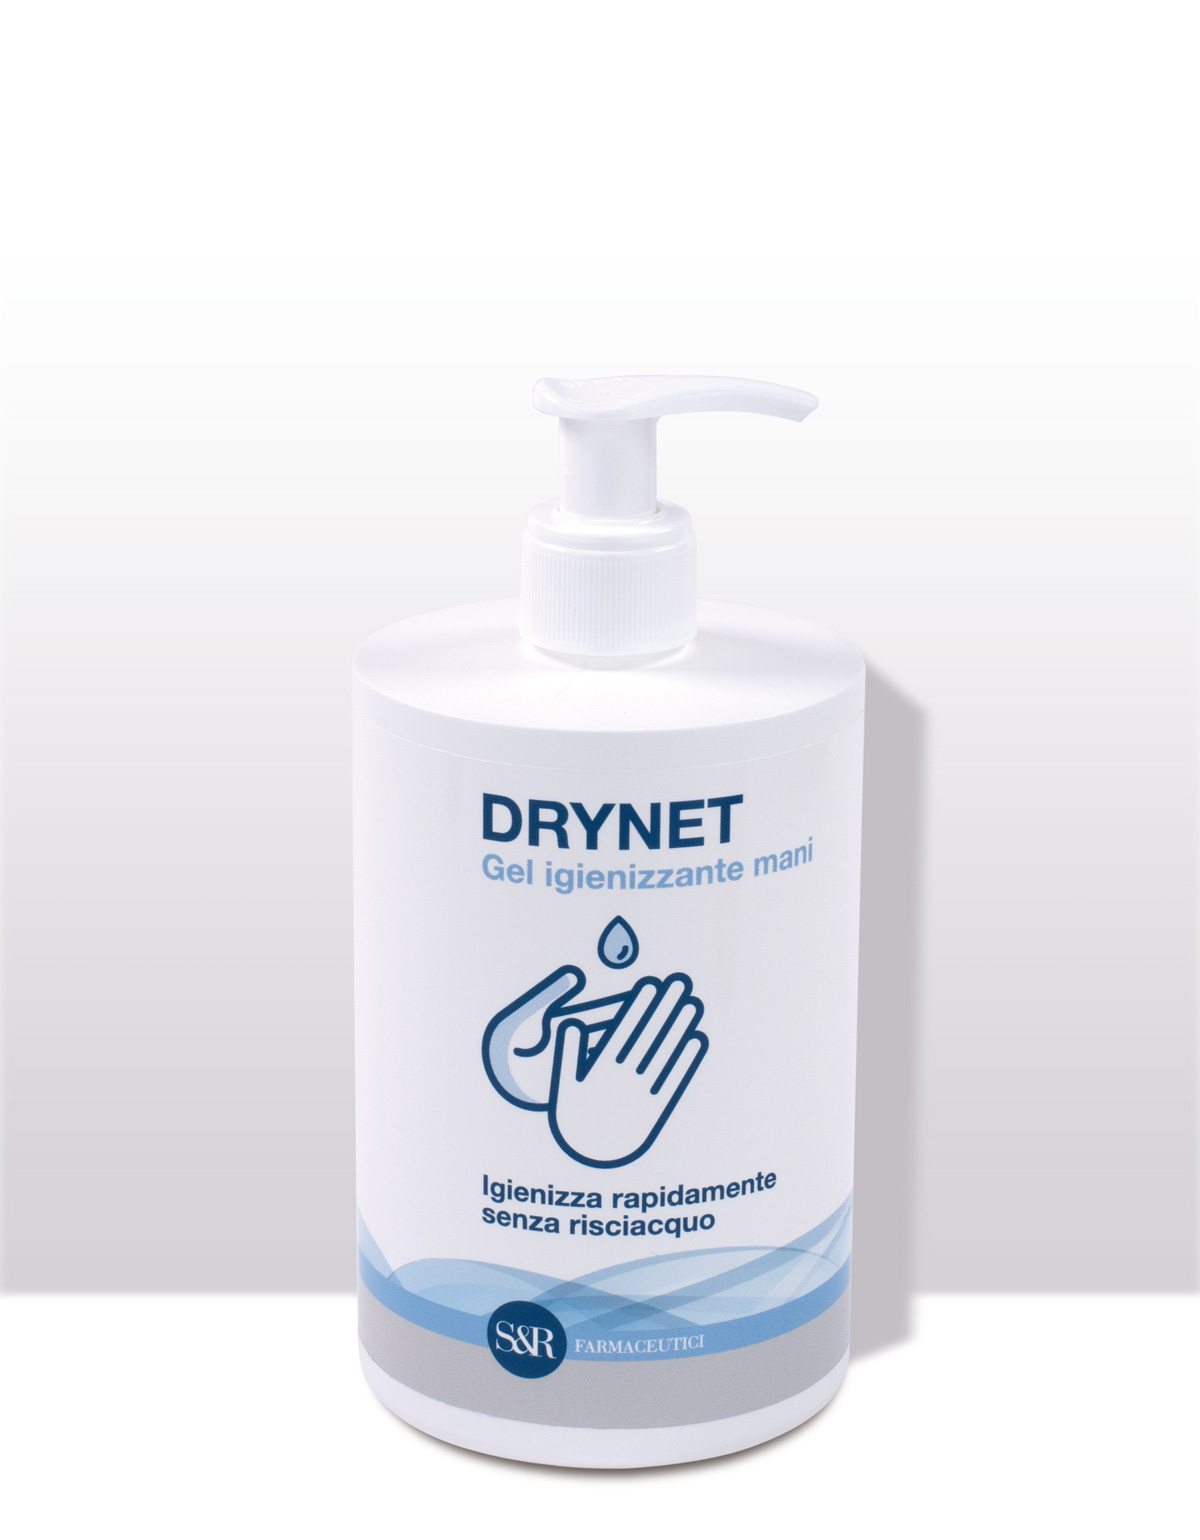 Image of DRYNET Gel igienizzante mani S&R 500ml